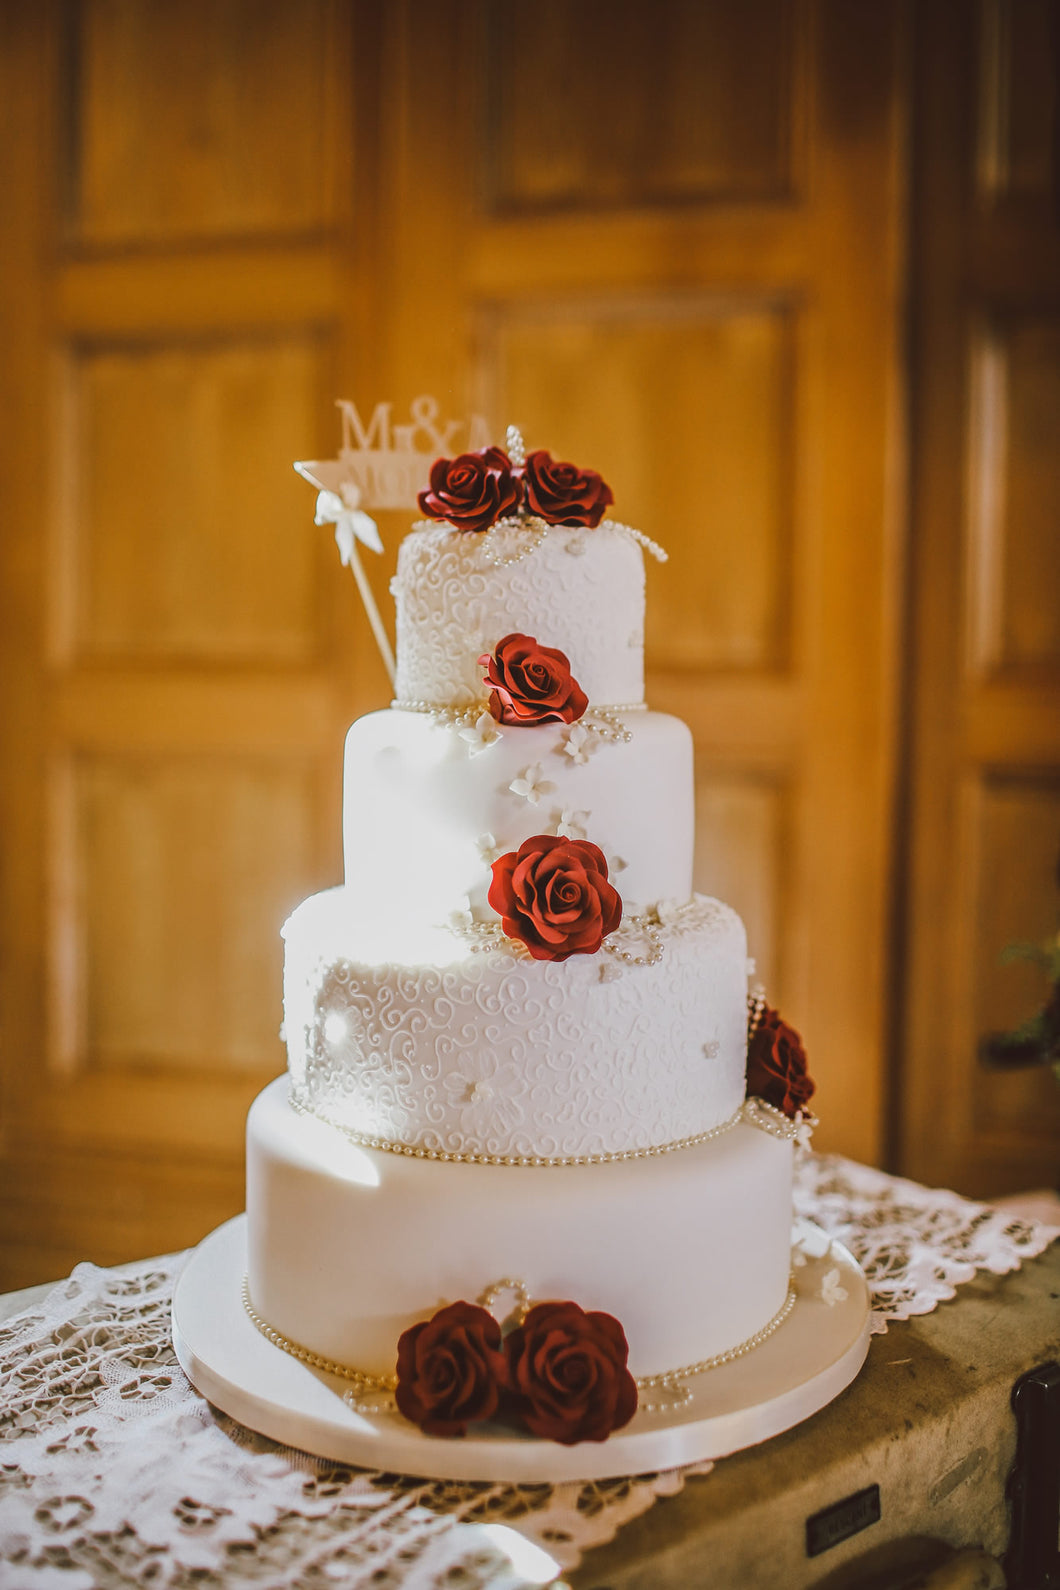 Special wedding cake